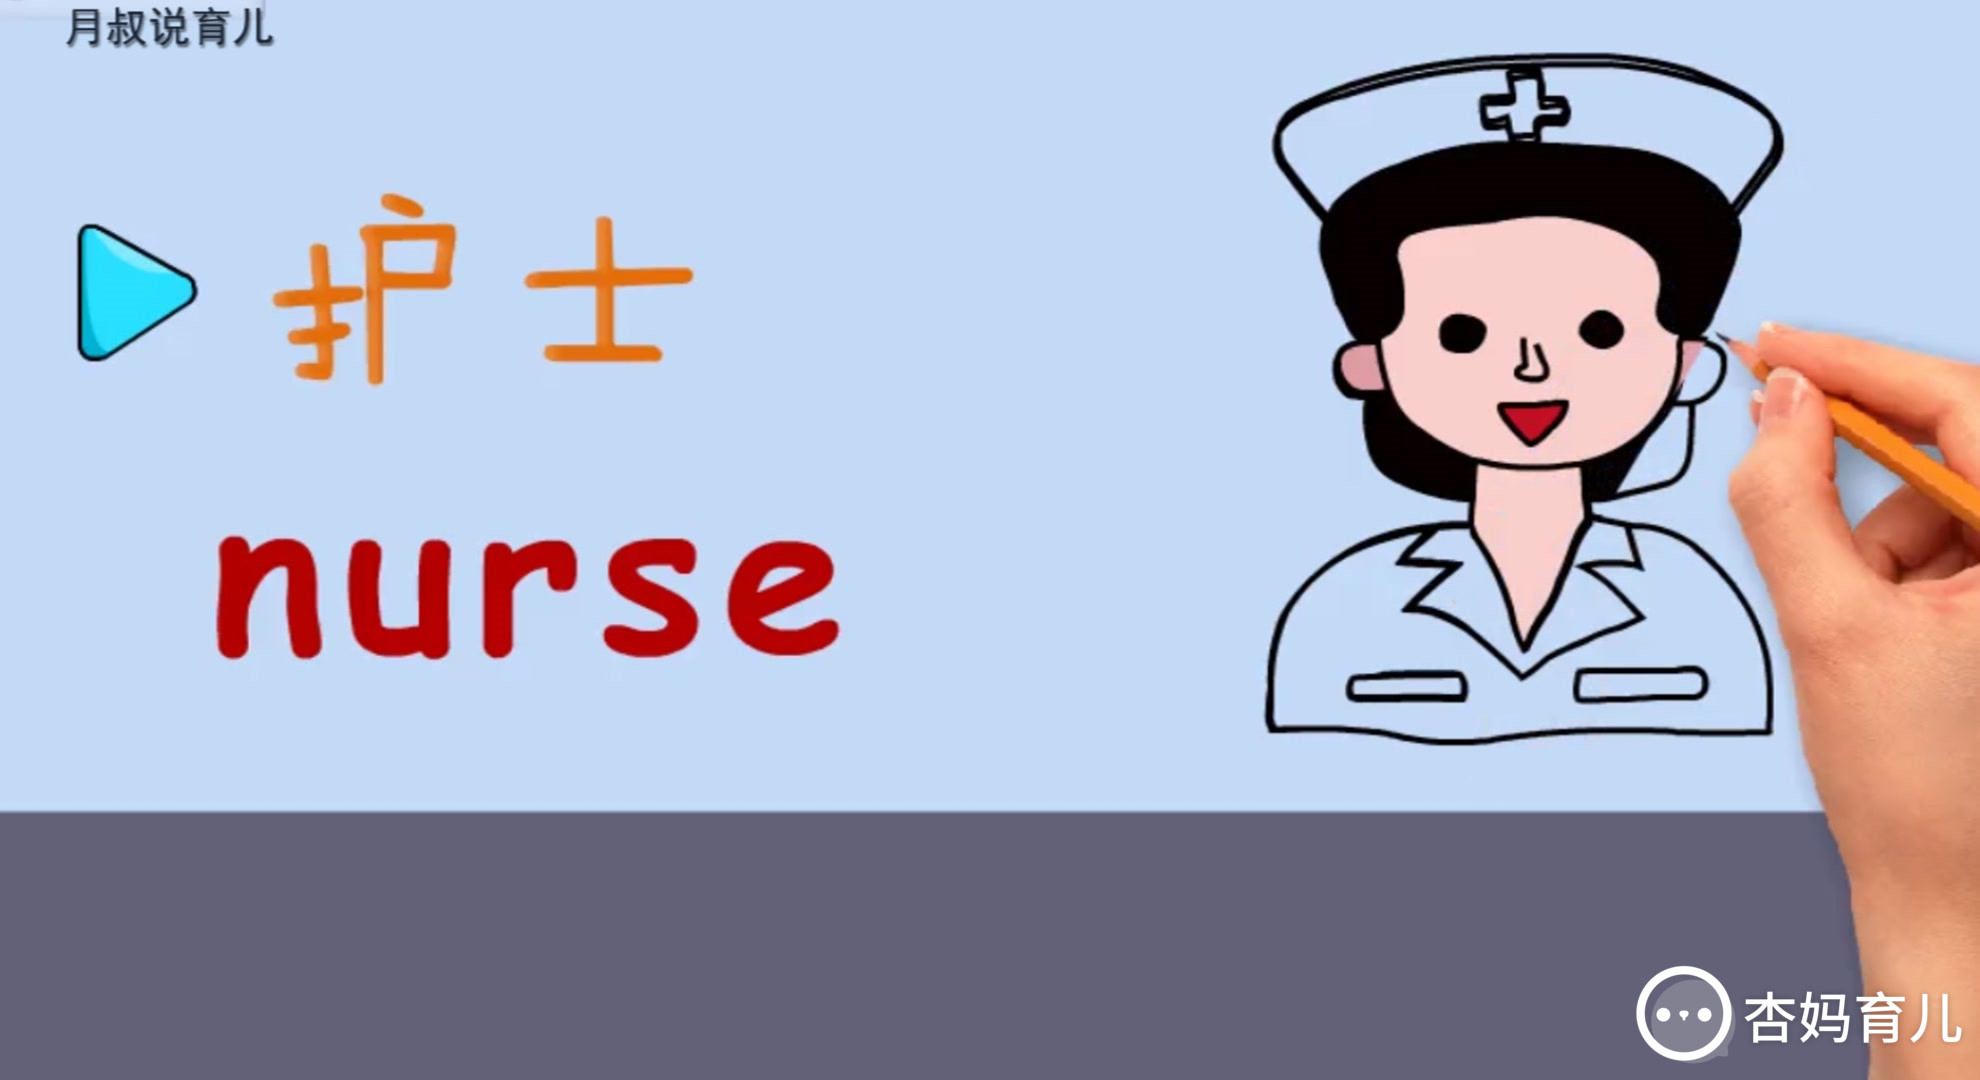 亲子绘画英语04:致敬英雄医护人员,护士英语学会了吗?